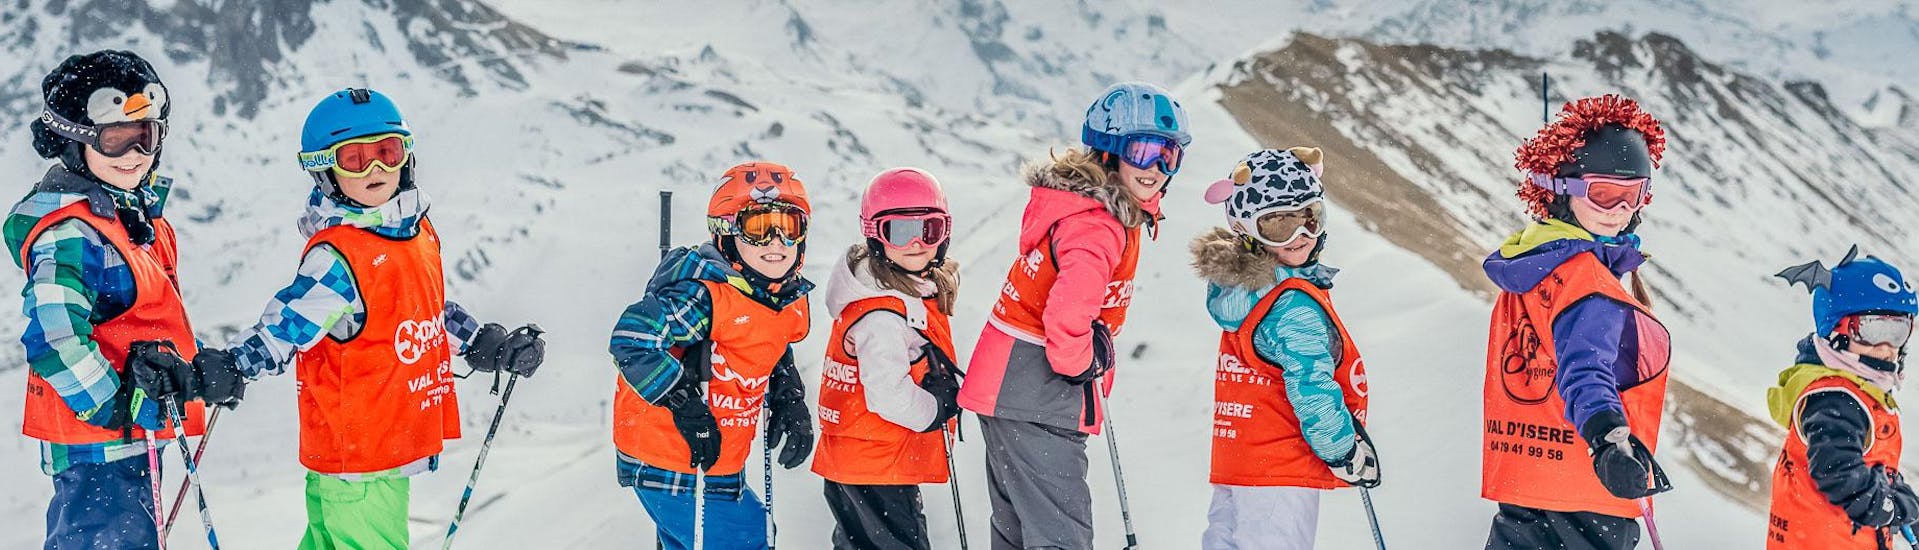 Cours de ski pour Enfants (3-12 ans).